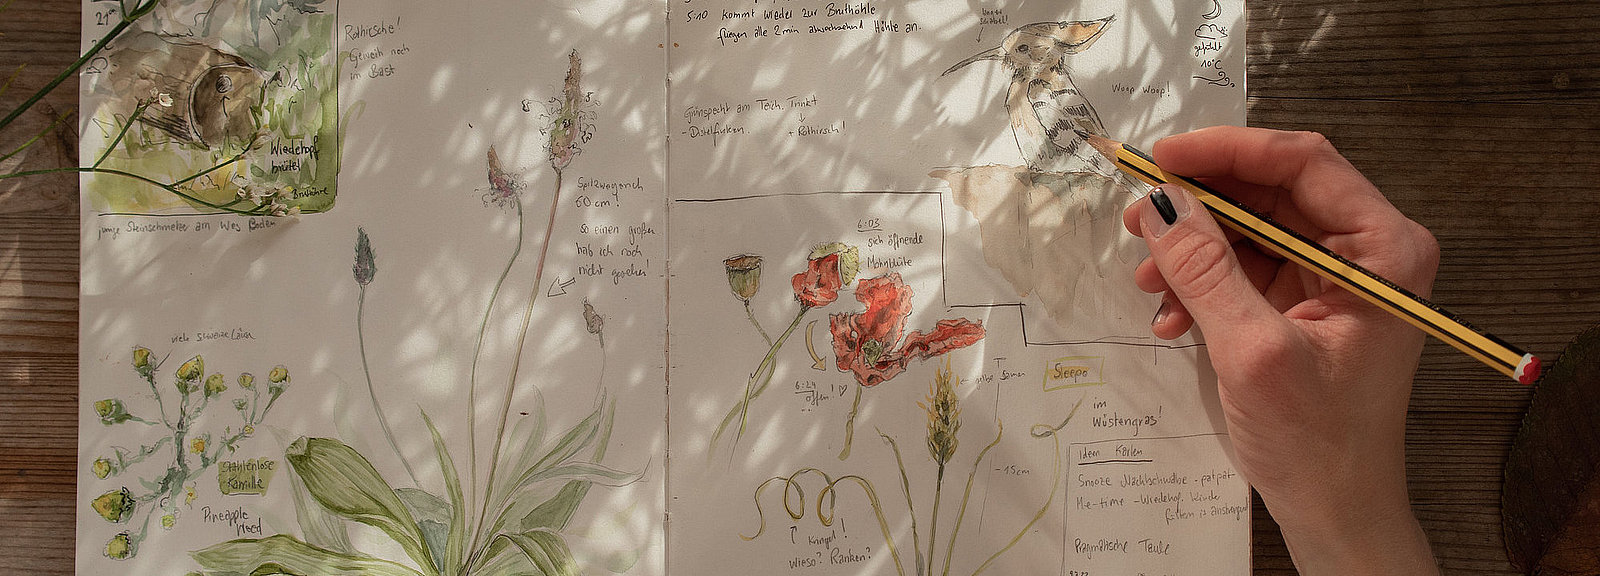 Aufgeschlagene Naturtagebuchseite mit Zeichnungen von Pflanzen